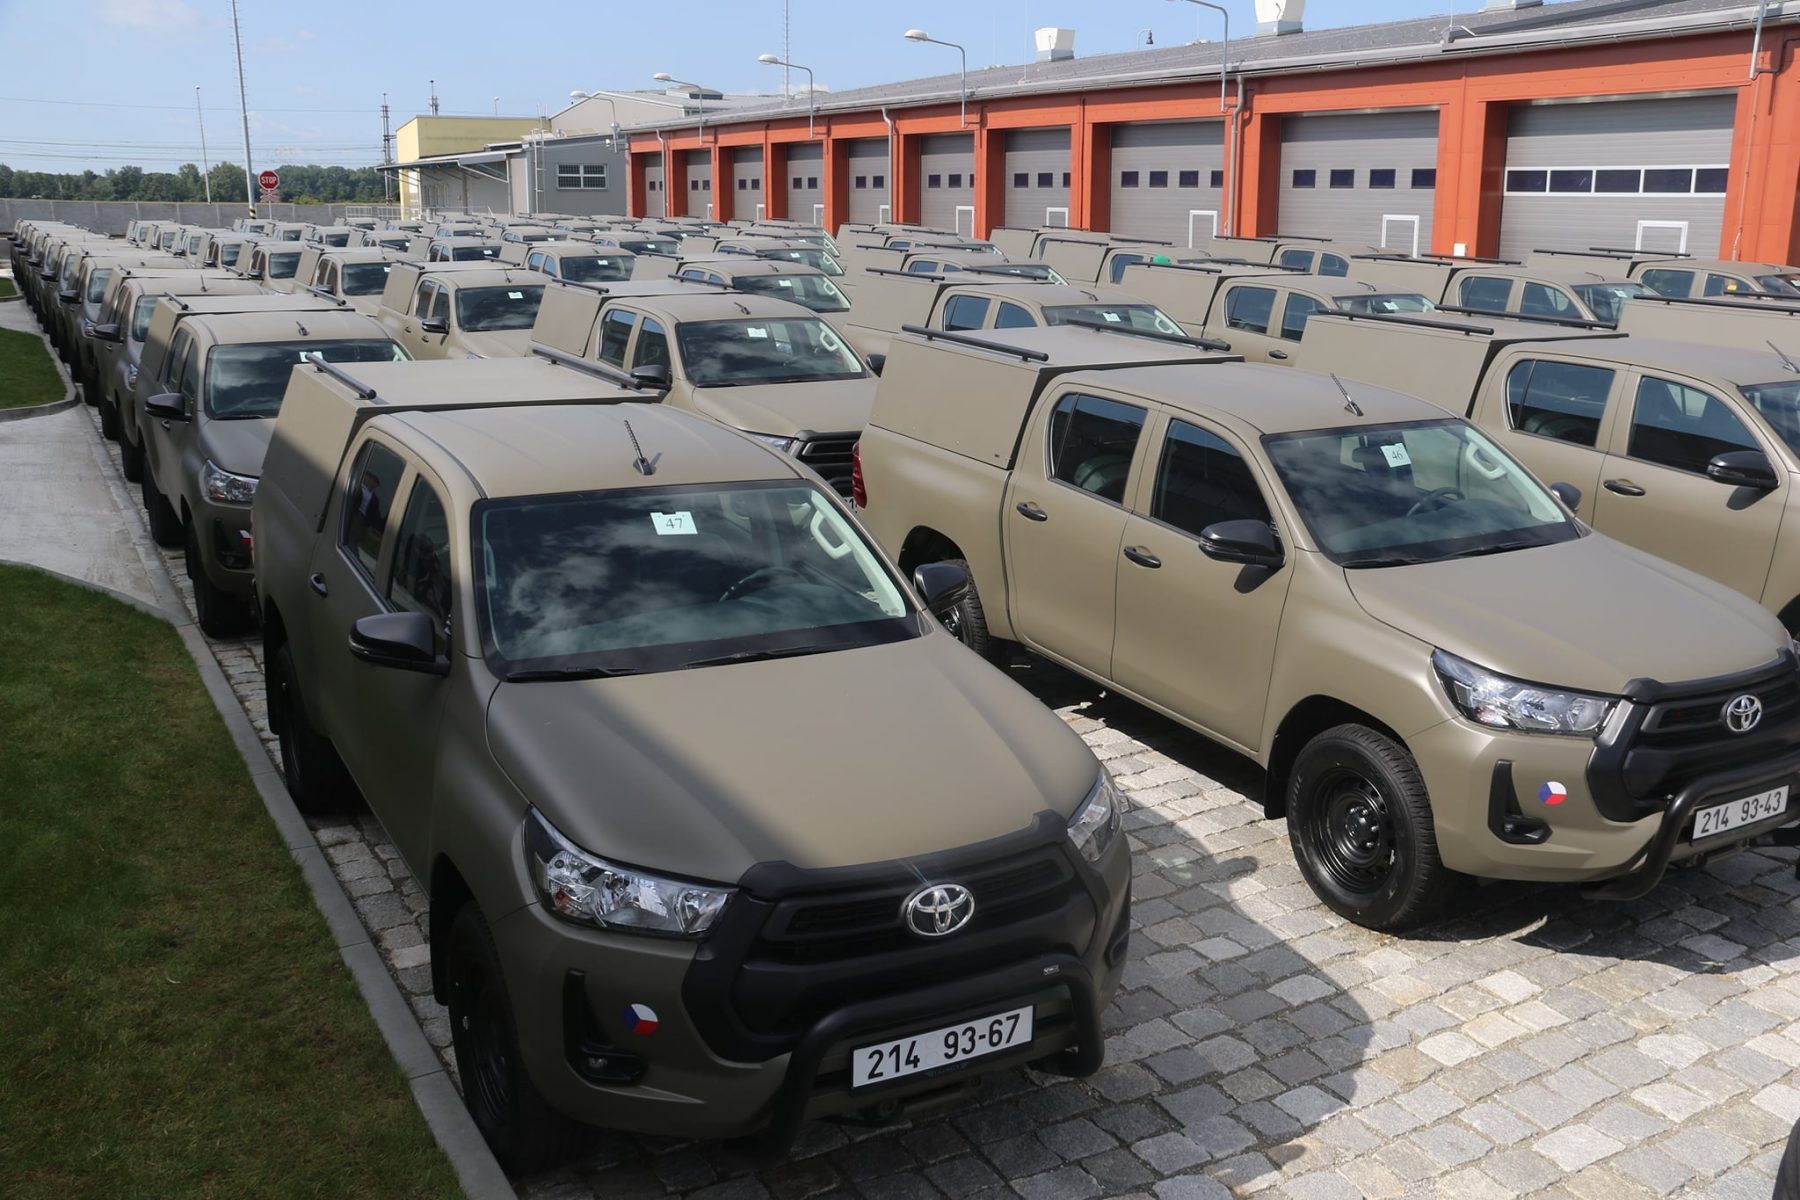 Tschechische Streitkraefte erhalten erste Toyota Hilux Foto CZ Armed Forces e1628835338839